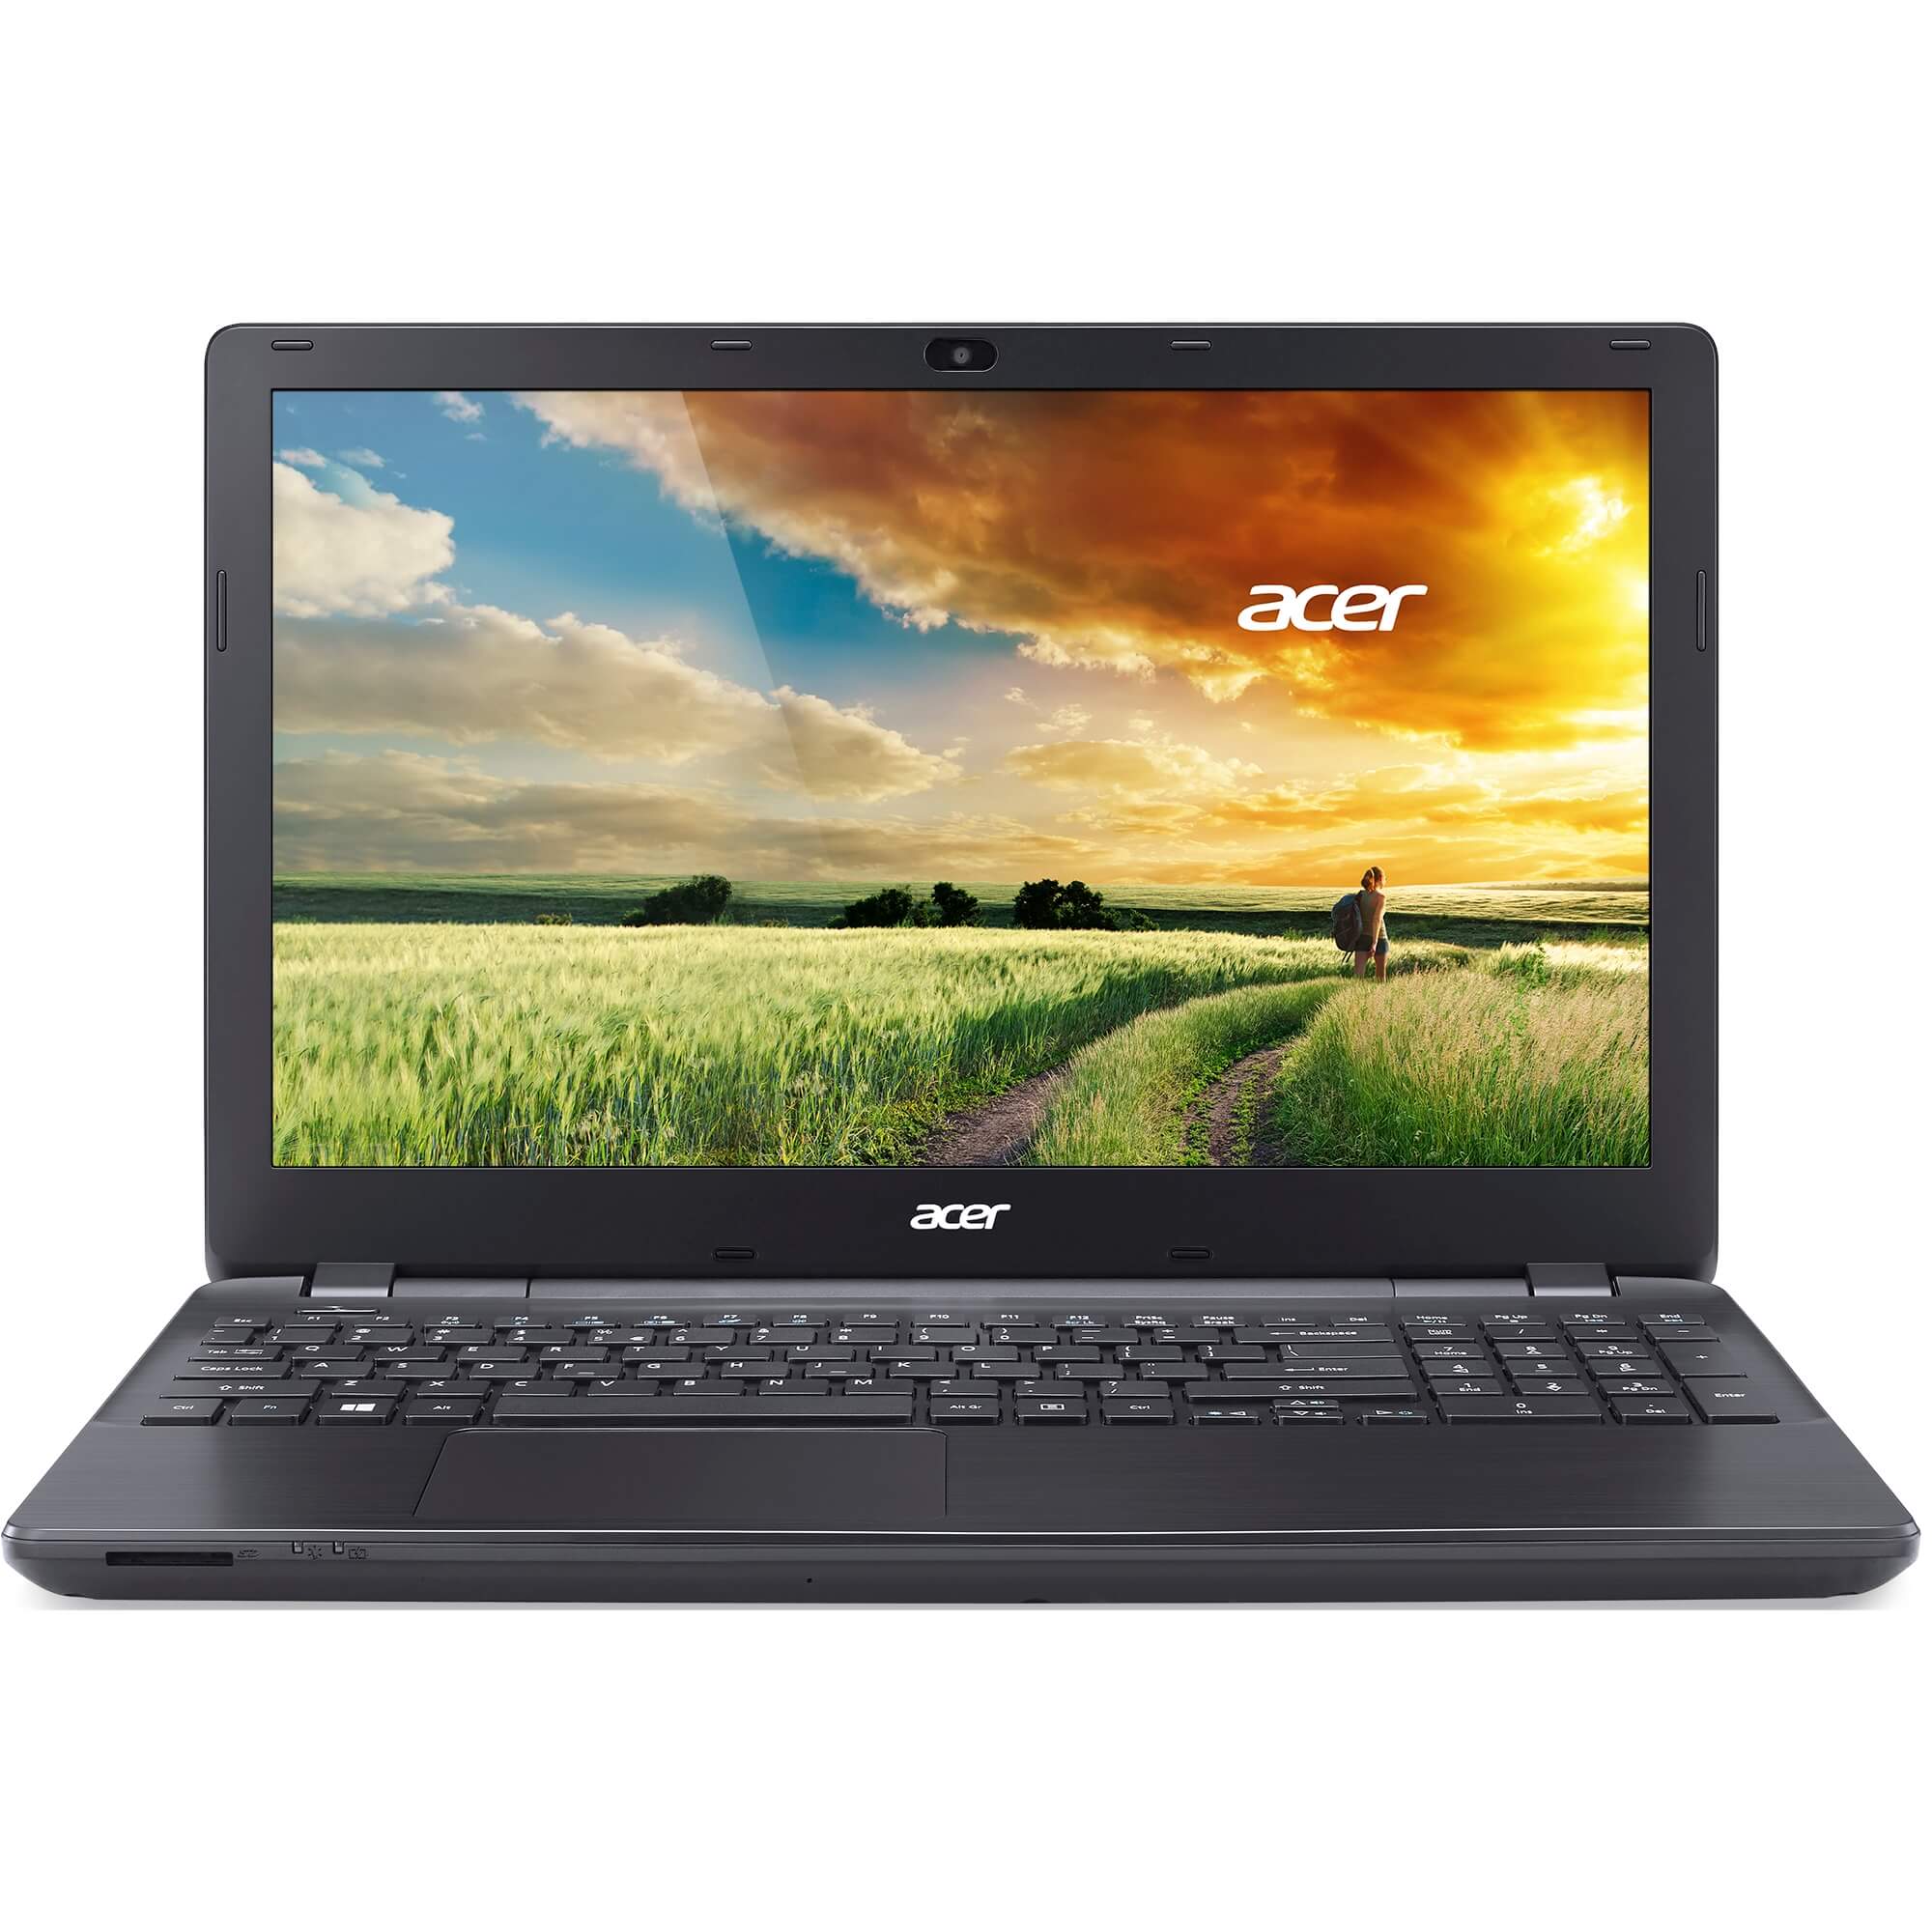 Laptop Acer Aspire E5-571G-36SU, Intel Core i3-4005U, 4GB DDR3, HDD 500GB, nVidia GeForce GT 820M 2GB, Linux